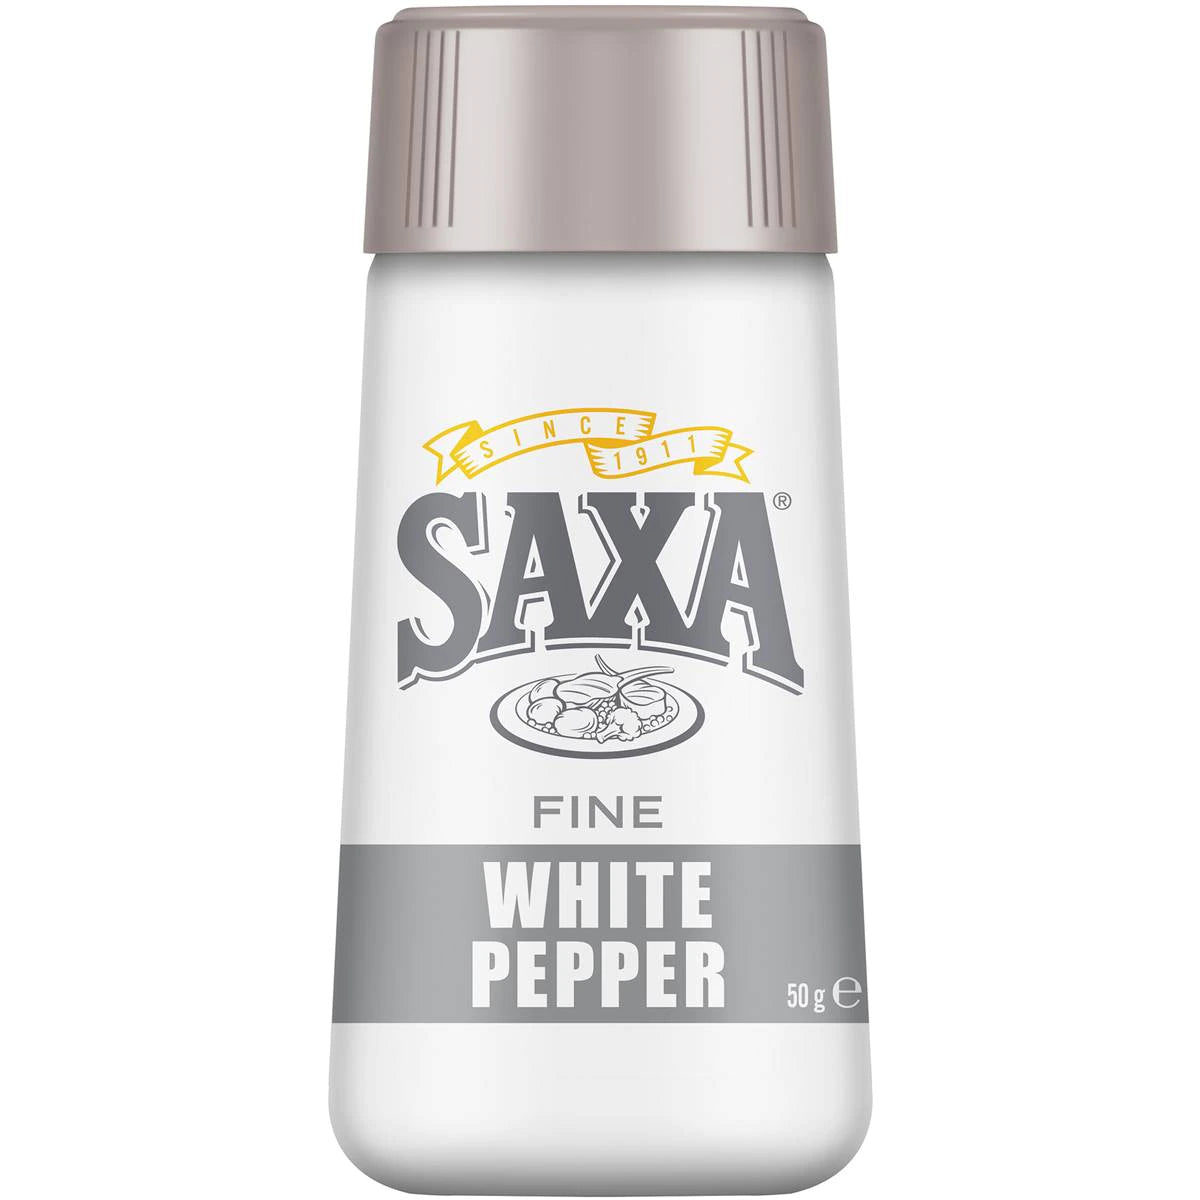 Saxa Fine White Pepper 50g